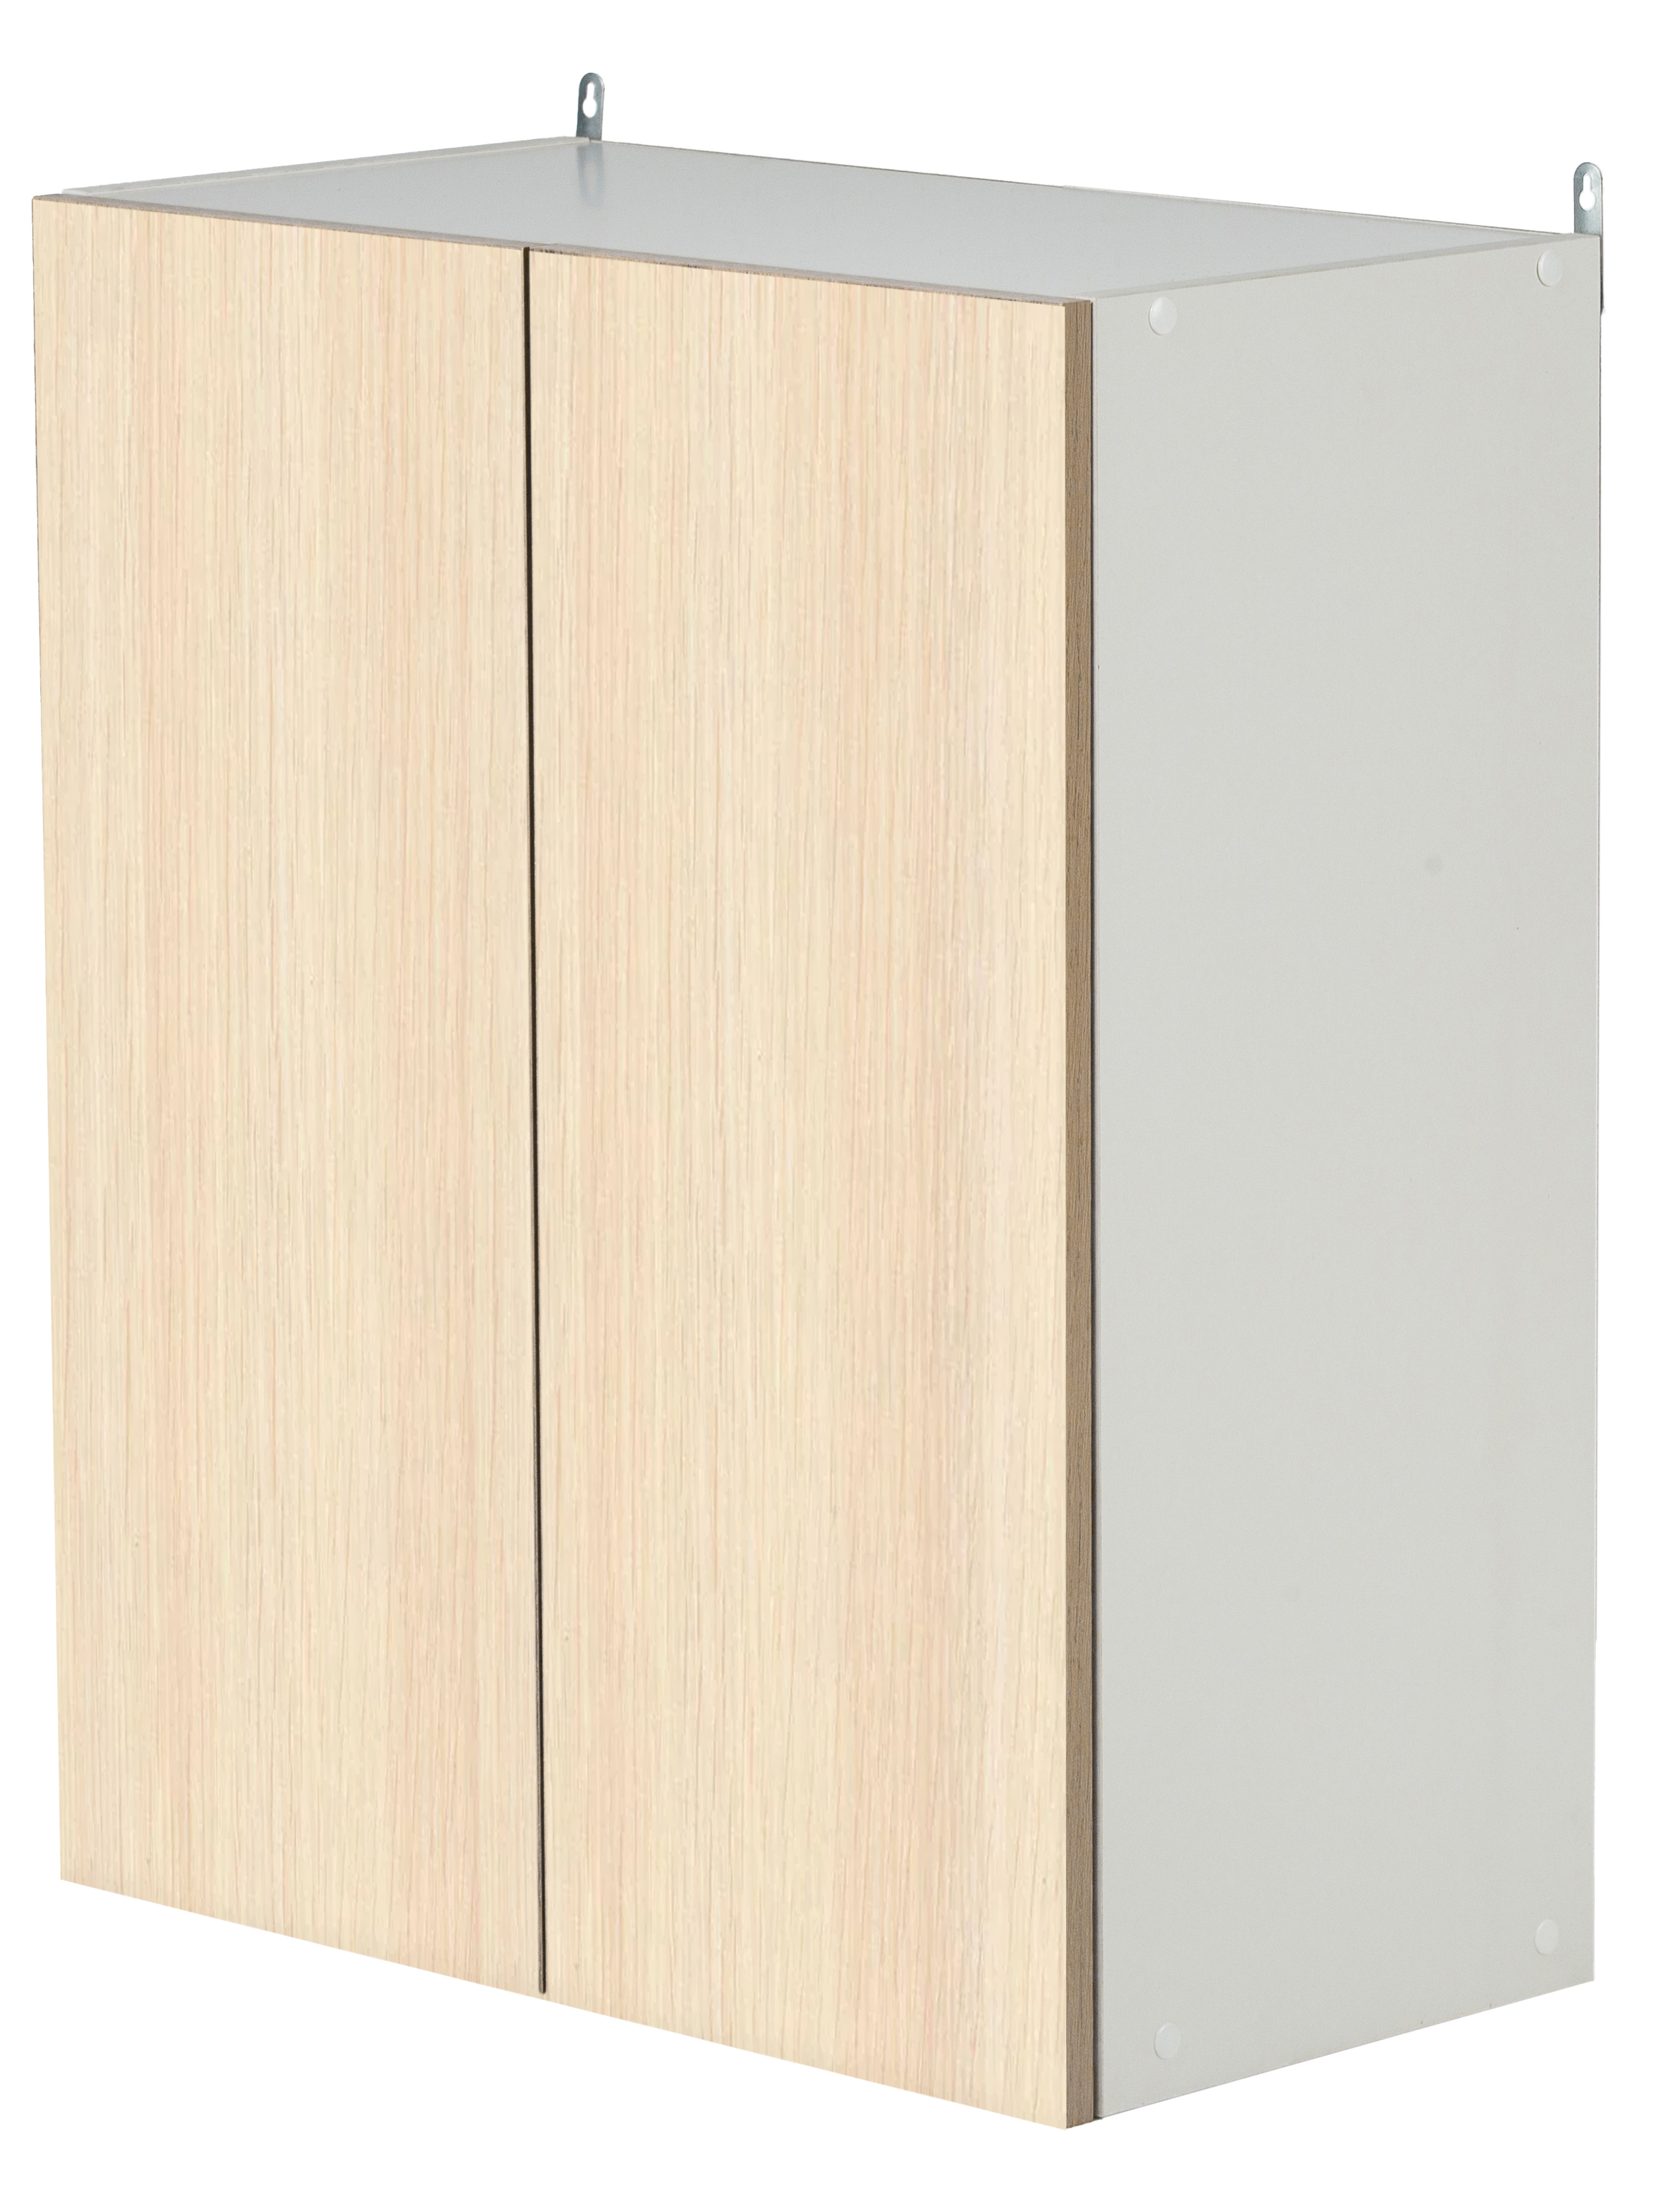 Шкаф навесной для кухни Д-125/ белый+дуб молочный